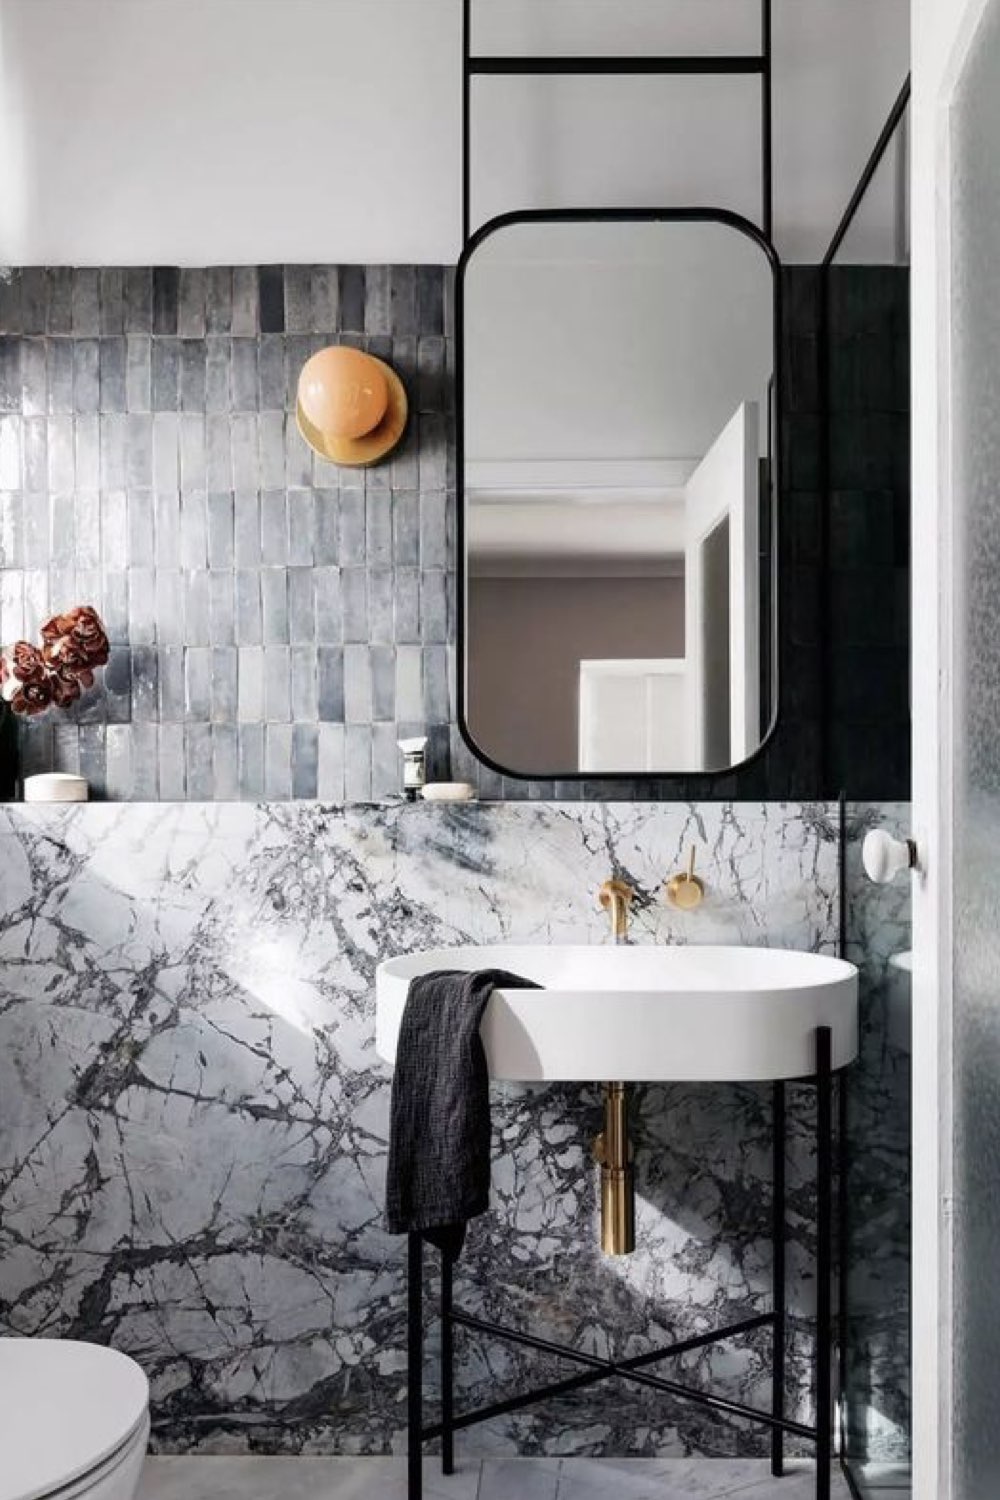 renovation salle de bain moderne exemple chic élégante marbre ardoise différente tonalité de blanc gris noir